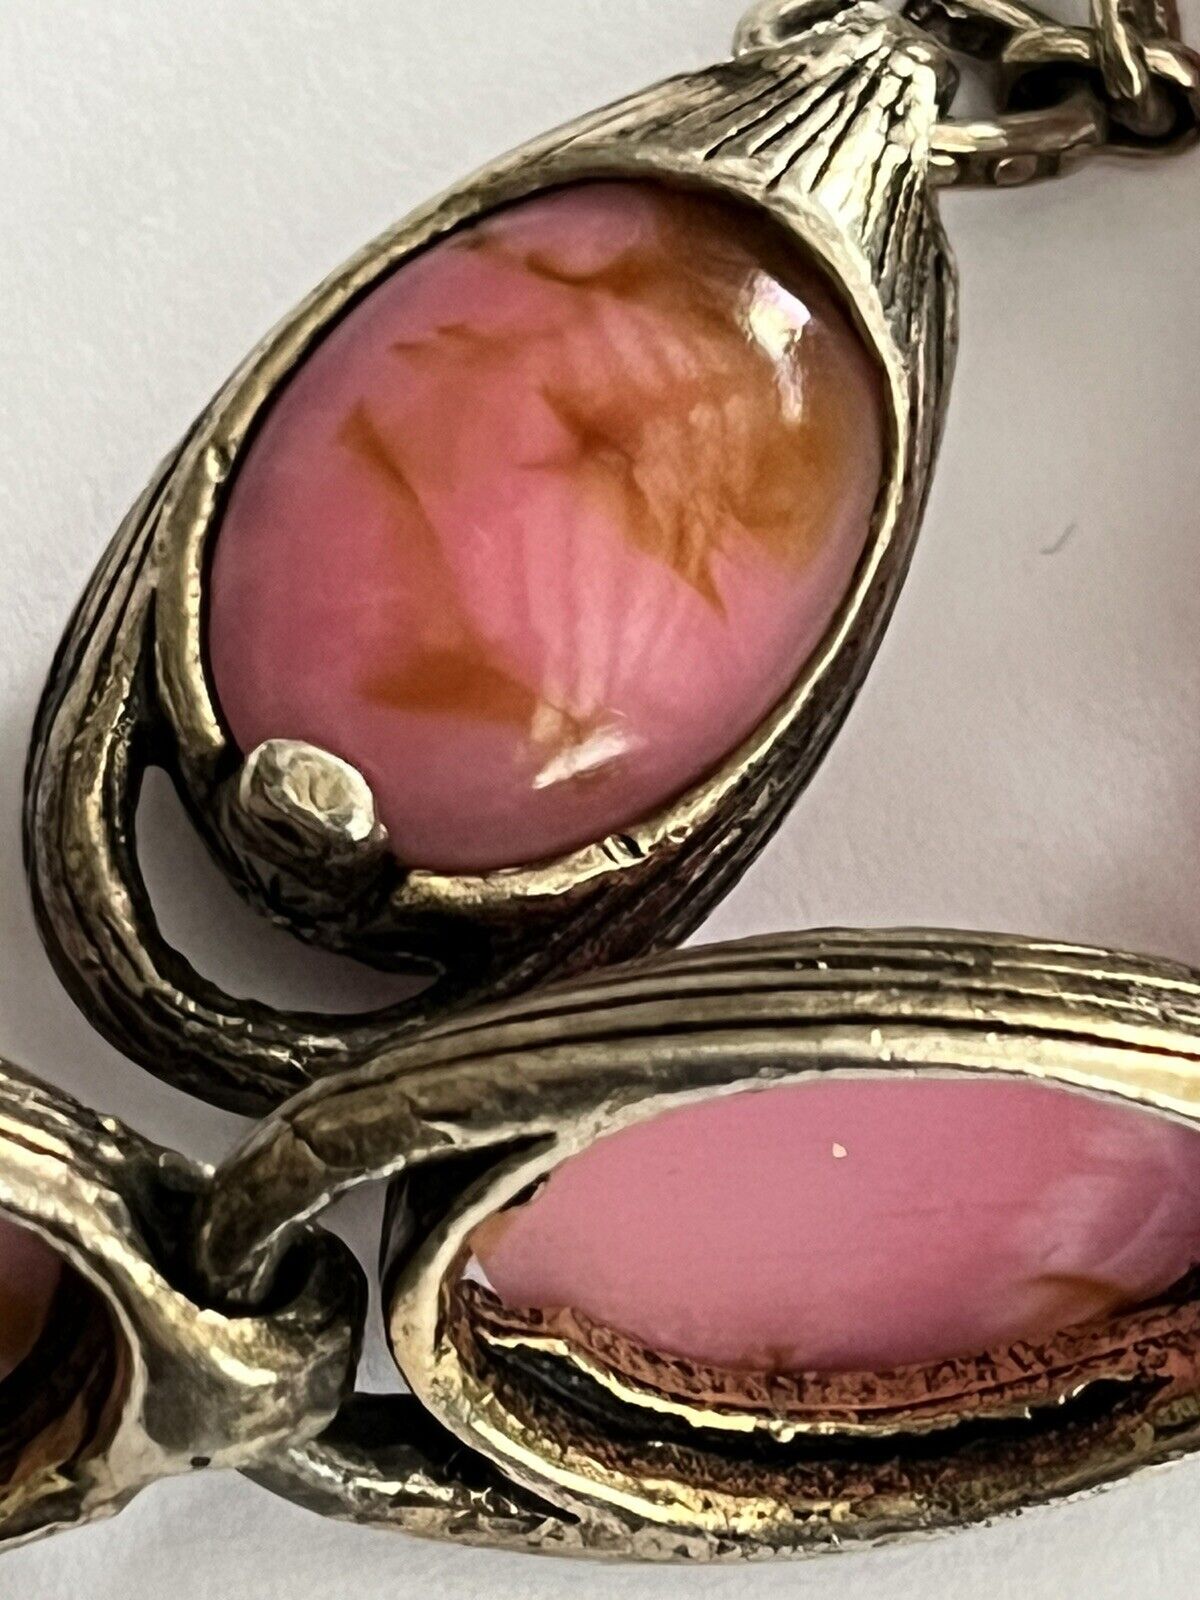 Vintage Miracle Signed Pink Marbled Silver Tone Link Bracelet